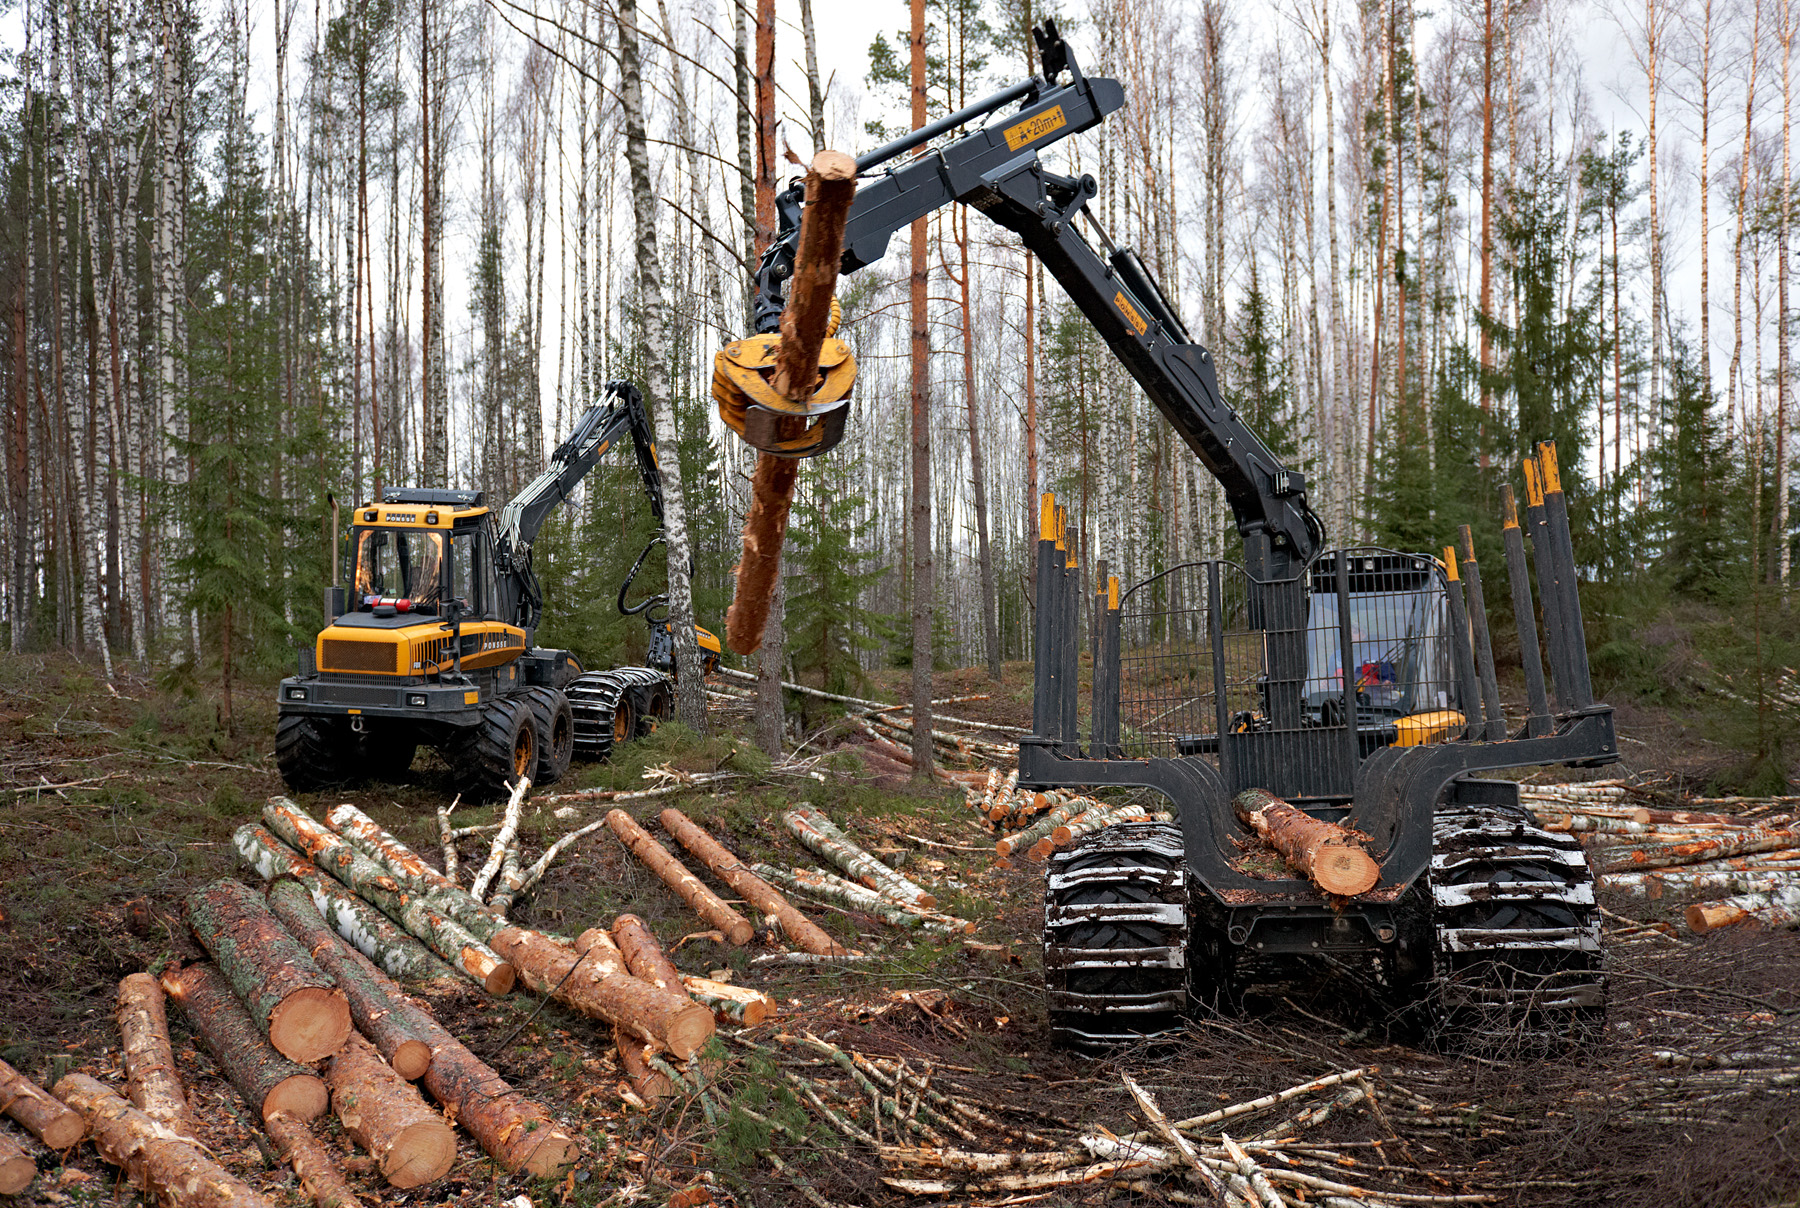 Iriscorpi tutvustus Iriscorp on Eesti kapitalil põhinev metsafirma, mis on saavutanud kohalikul turul märkimisväärse positsiooni, olles osa laiemast Combi grupi